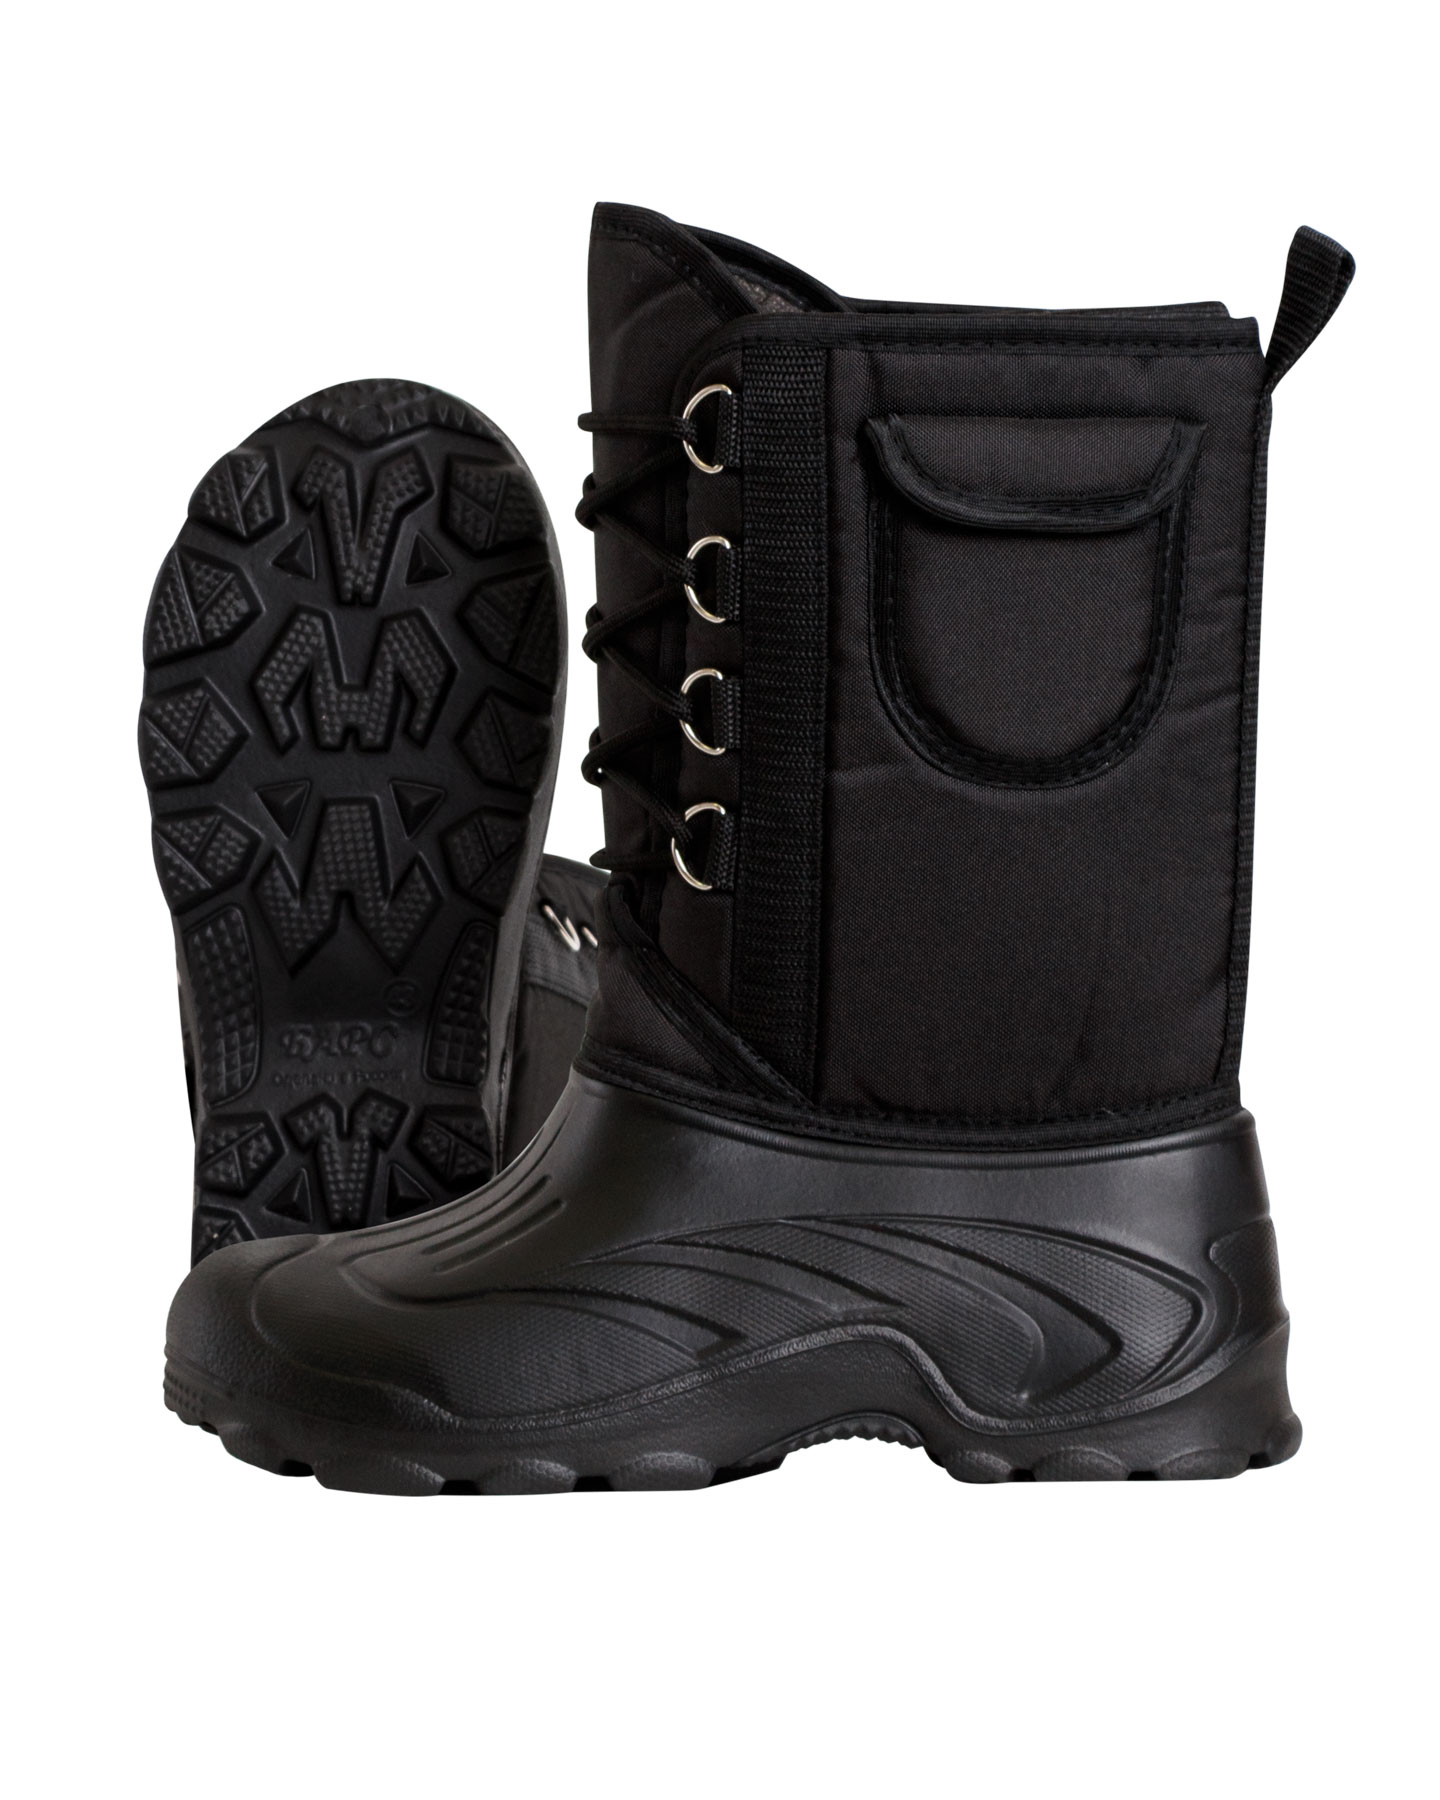 Дутики "ЭВА" мужские (Д-014 ч) на шнуровке с чулком (-40С), цвет: черный